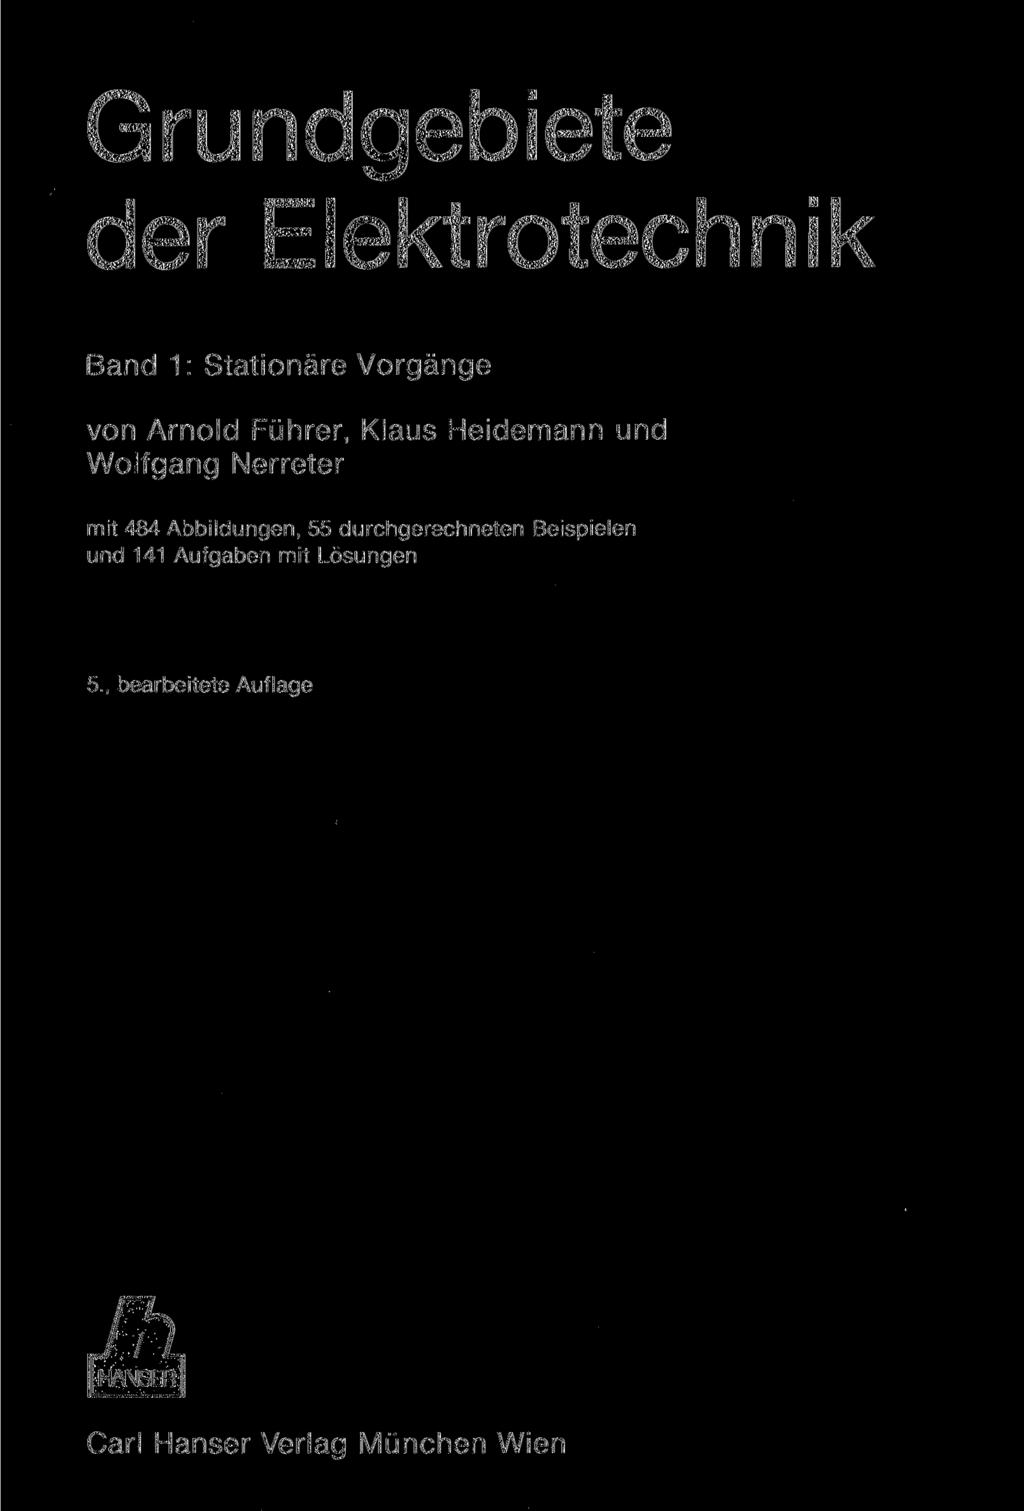 Grundgebiete der Elektrotechnik Band 1: Stationäre Vorgänge von Arnold Führer, Klaus Heidemann und Wolfgang Nerreter mit 484